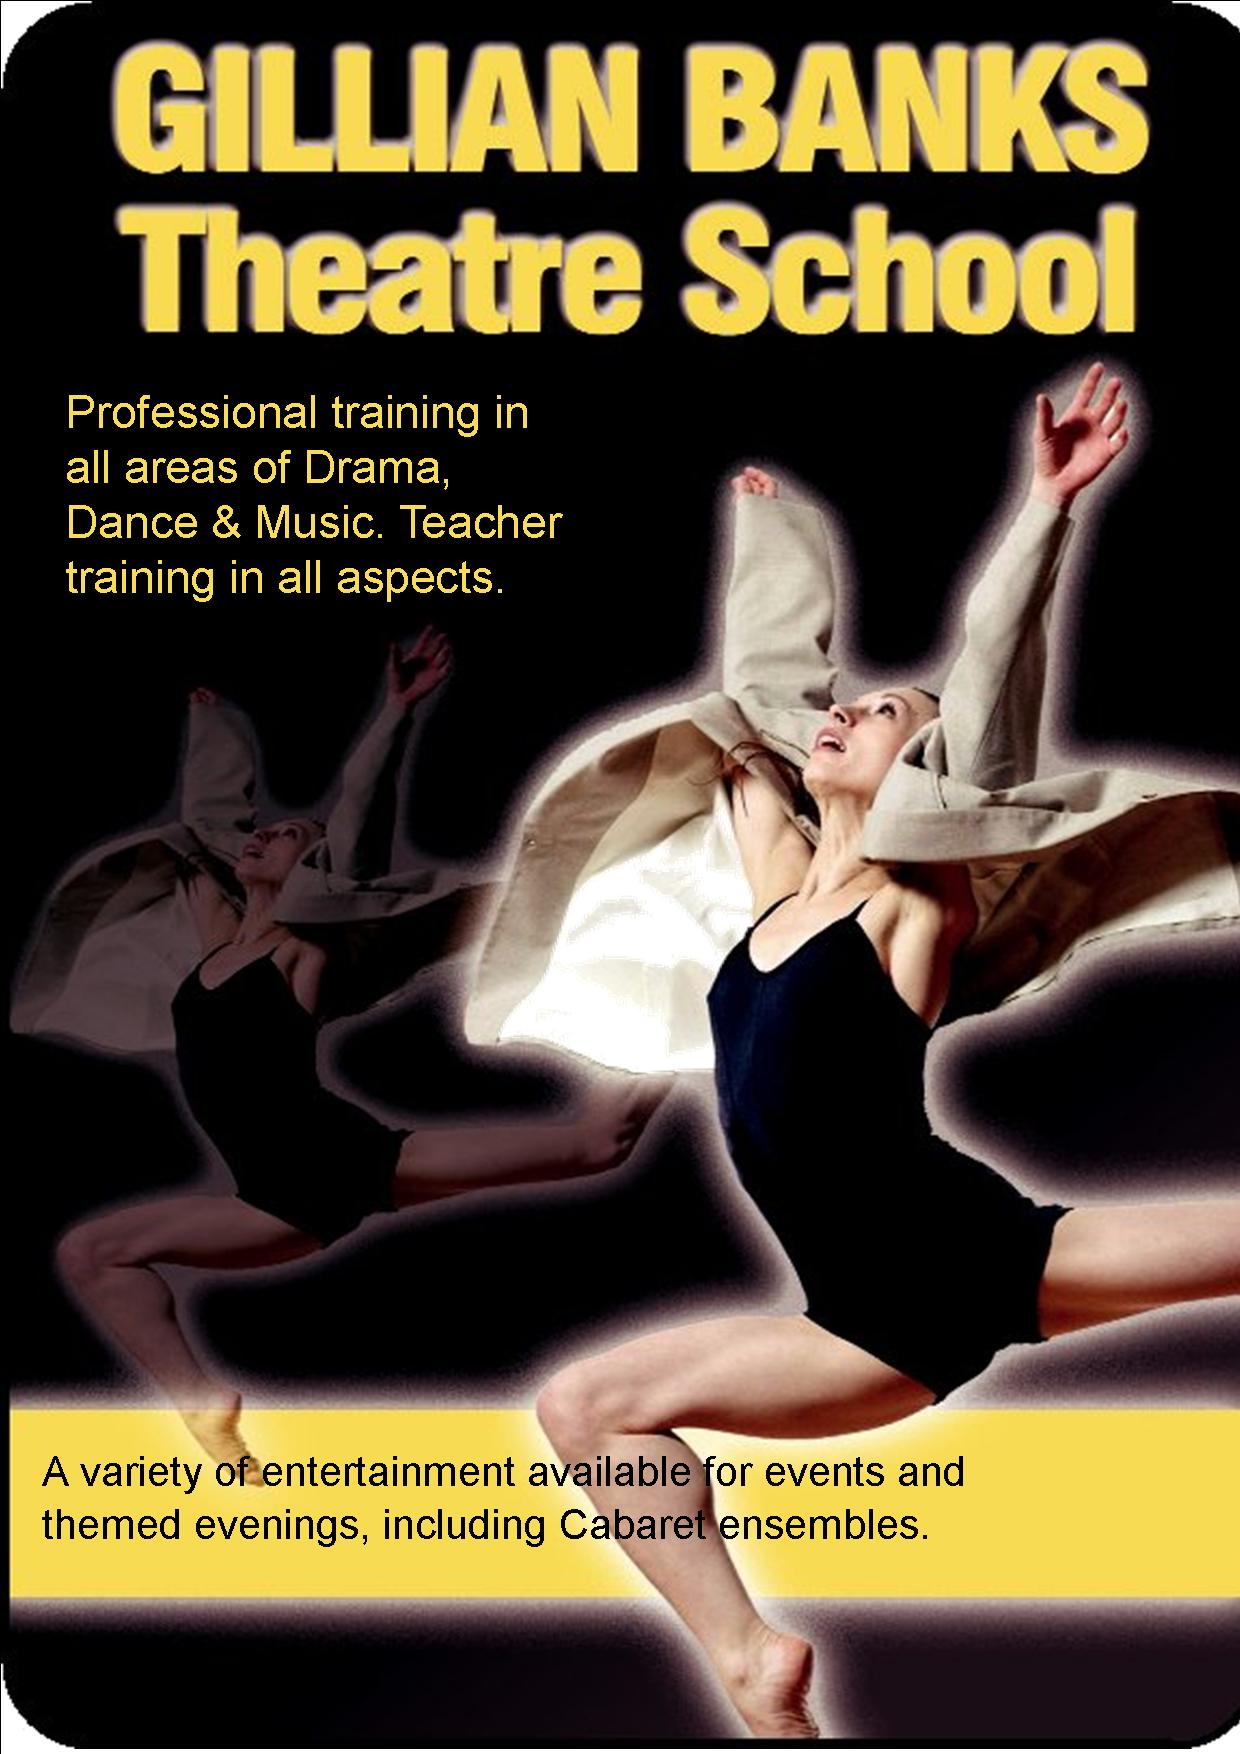 gillian banks theatre school advert